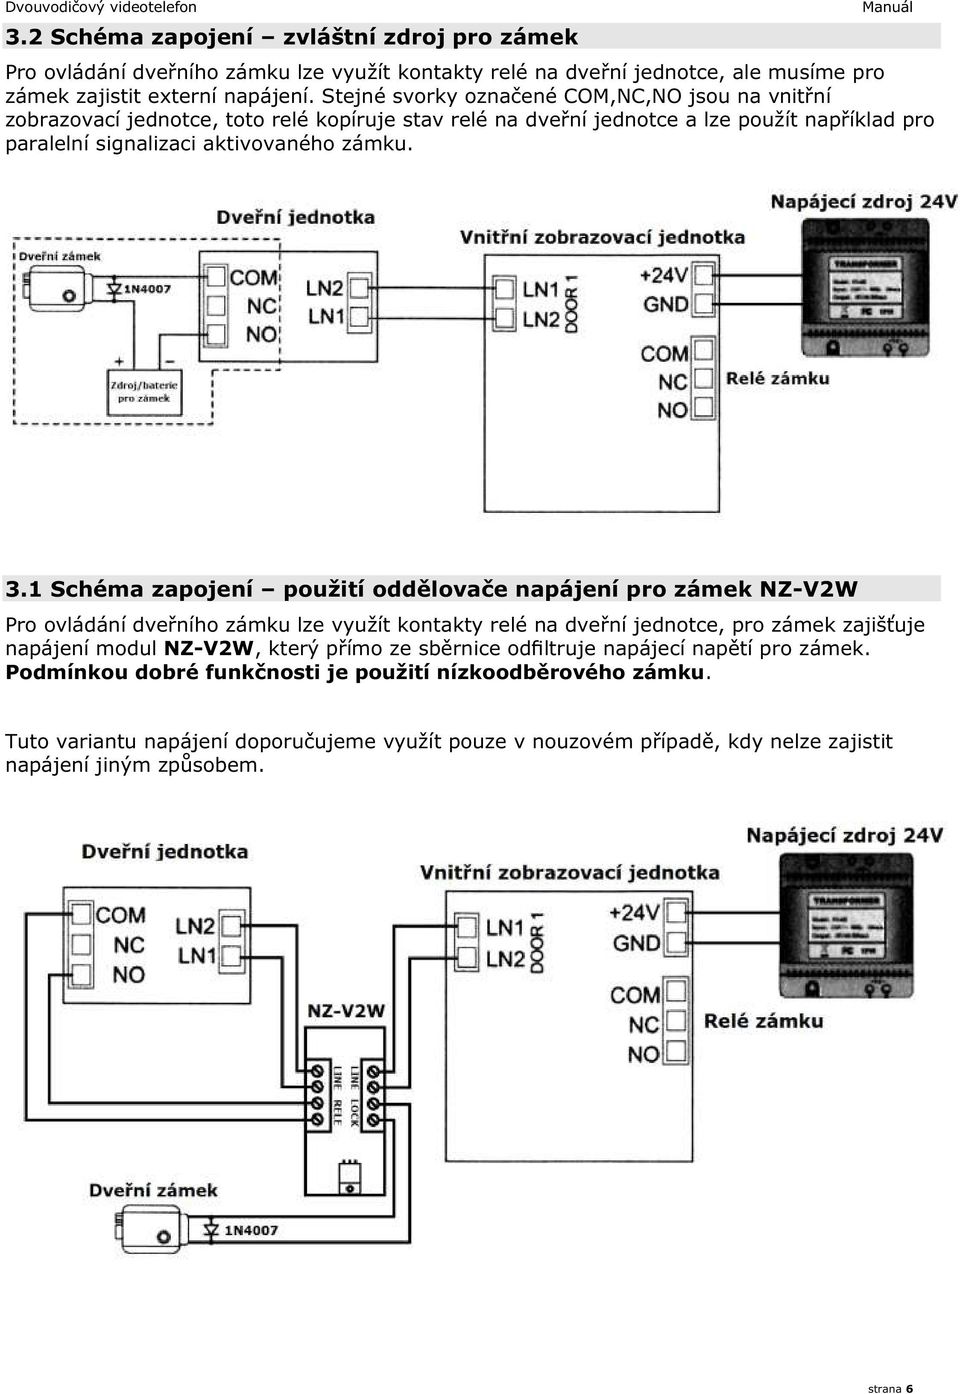 1 Schéma zapojení použití oddělovače napájení pro zámek NZ-V2W Pro ovládání dveřního zámku lze využít kontakty relé na dveřní jednotce, pro zámek zajišťuje napájení modul NZ-V2W, který přímo ze